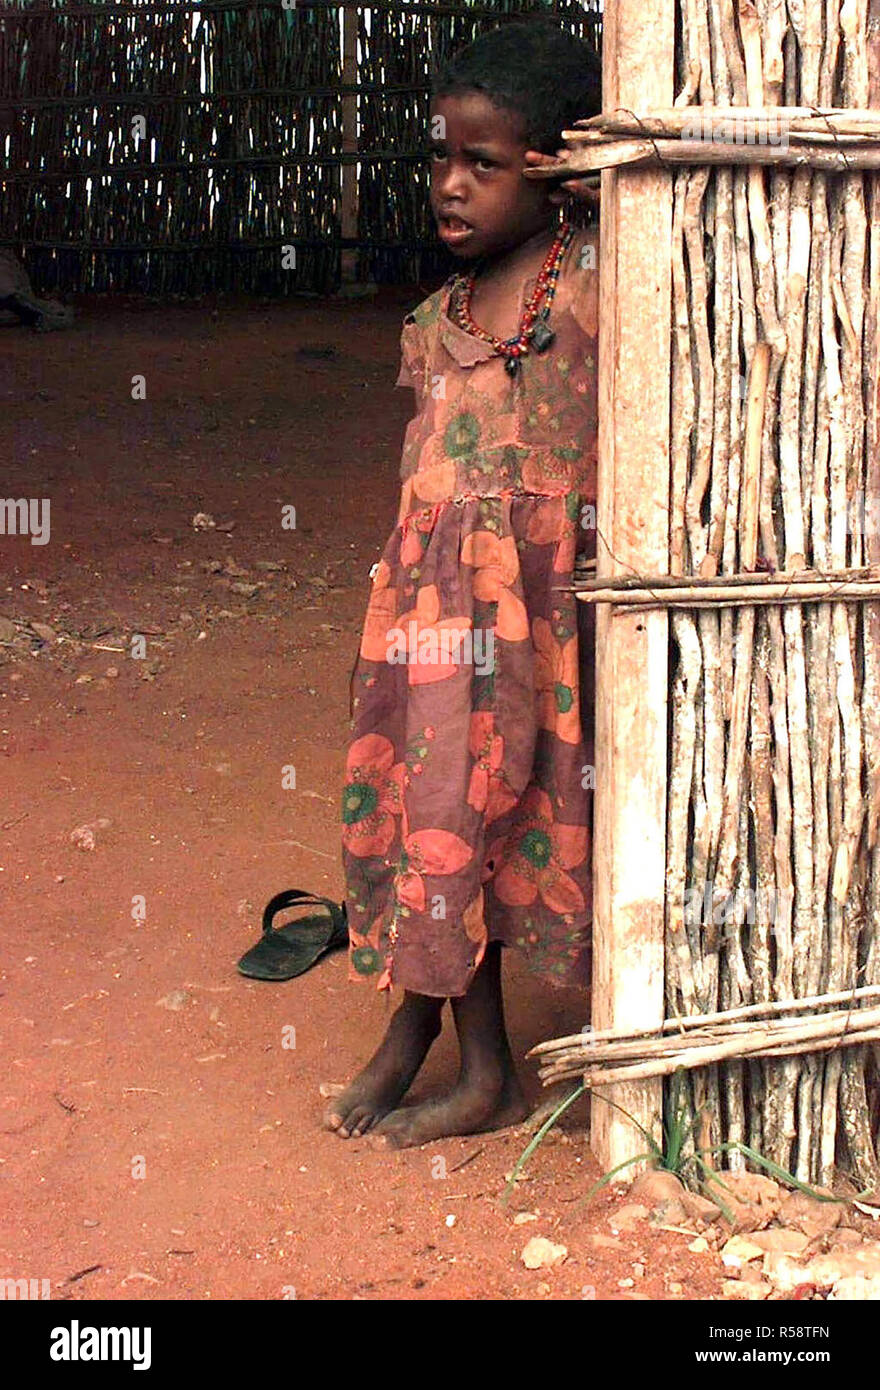 1992 - tout droit, medium close-up d'une petite fille somalienne, environ six ou sept ans. Elle porte une robe à fleurs et s'appuie contre l'entrée d'une cabane en bambou avec un plancher en terre battue. Banque D'Images